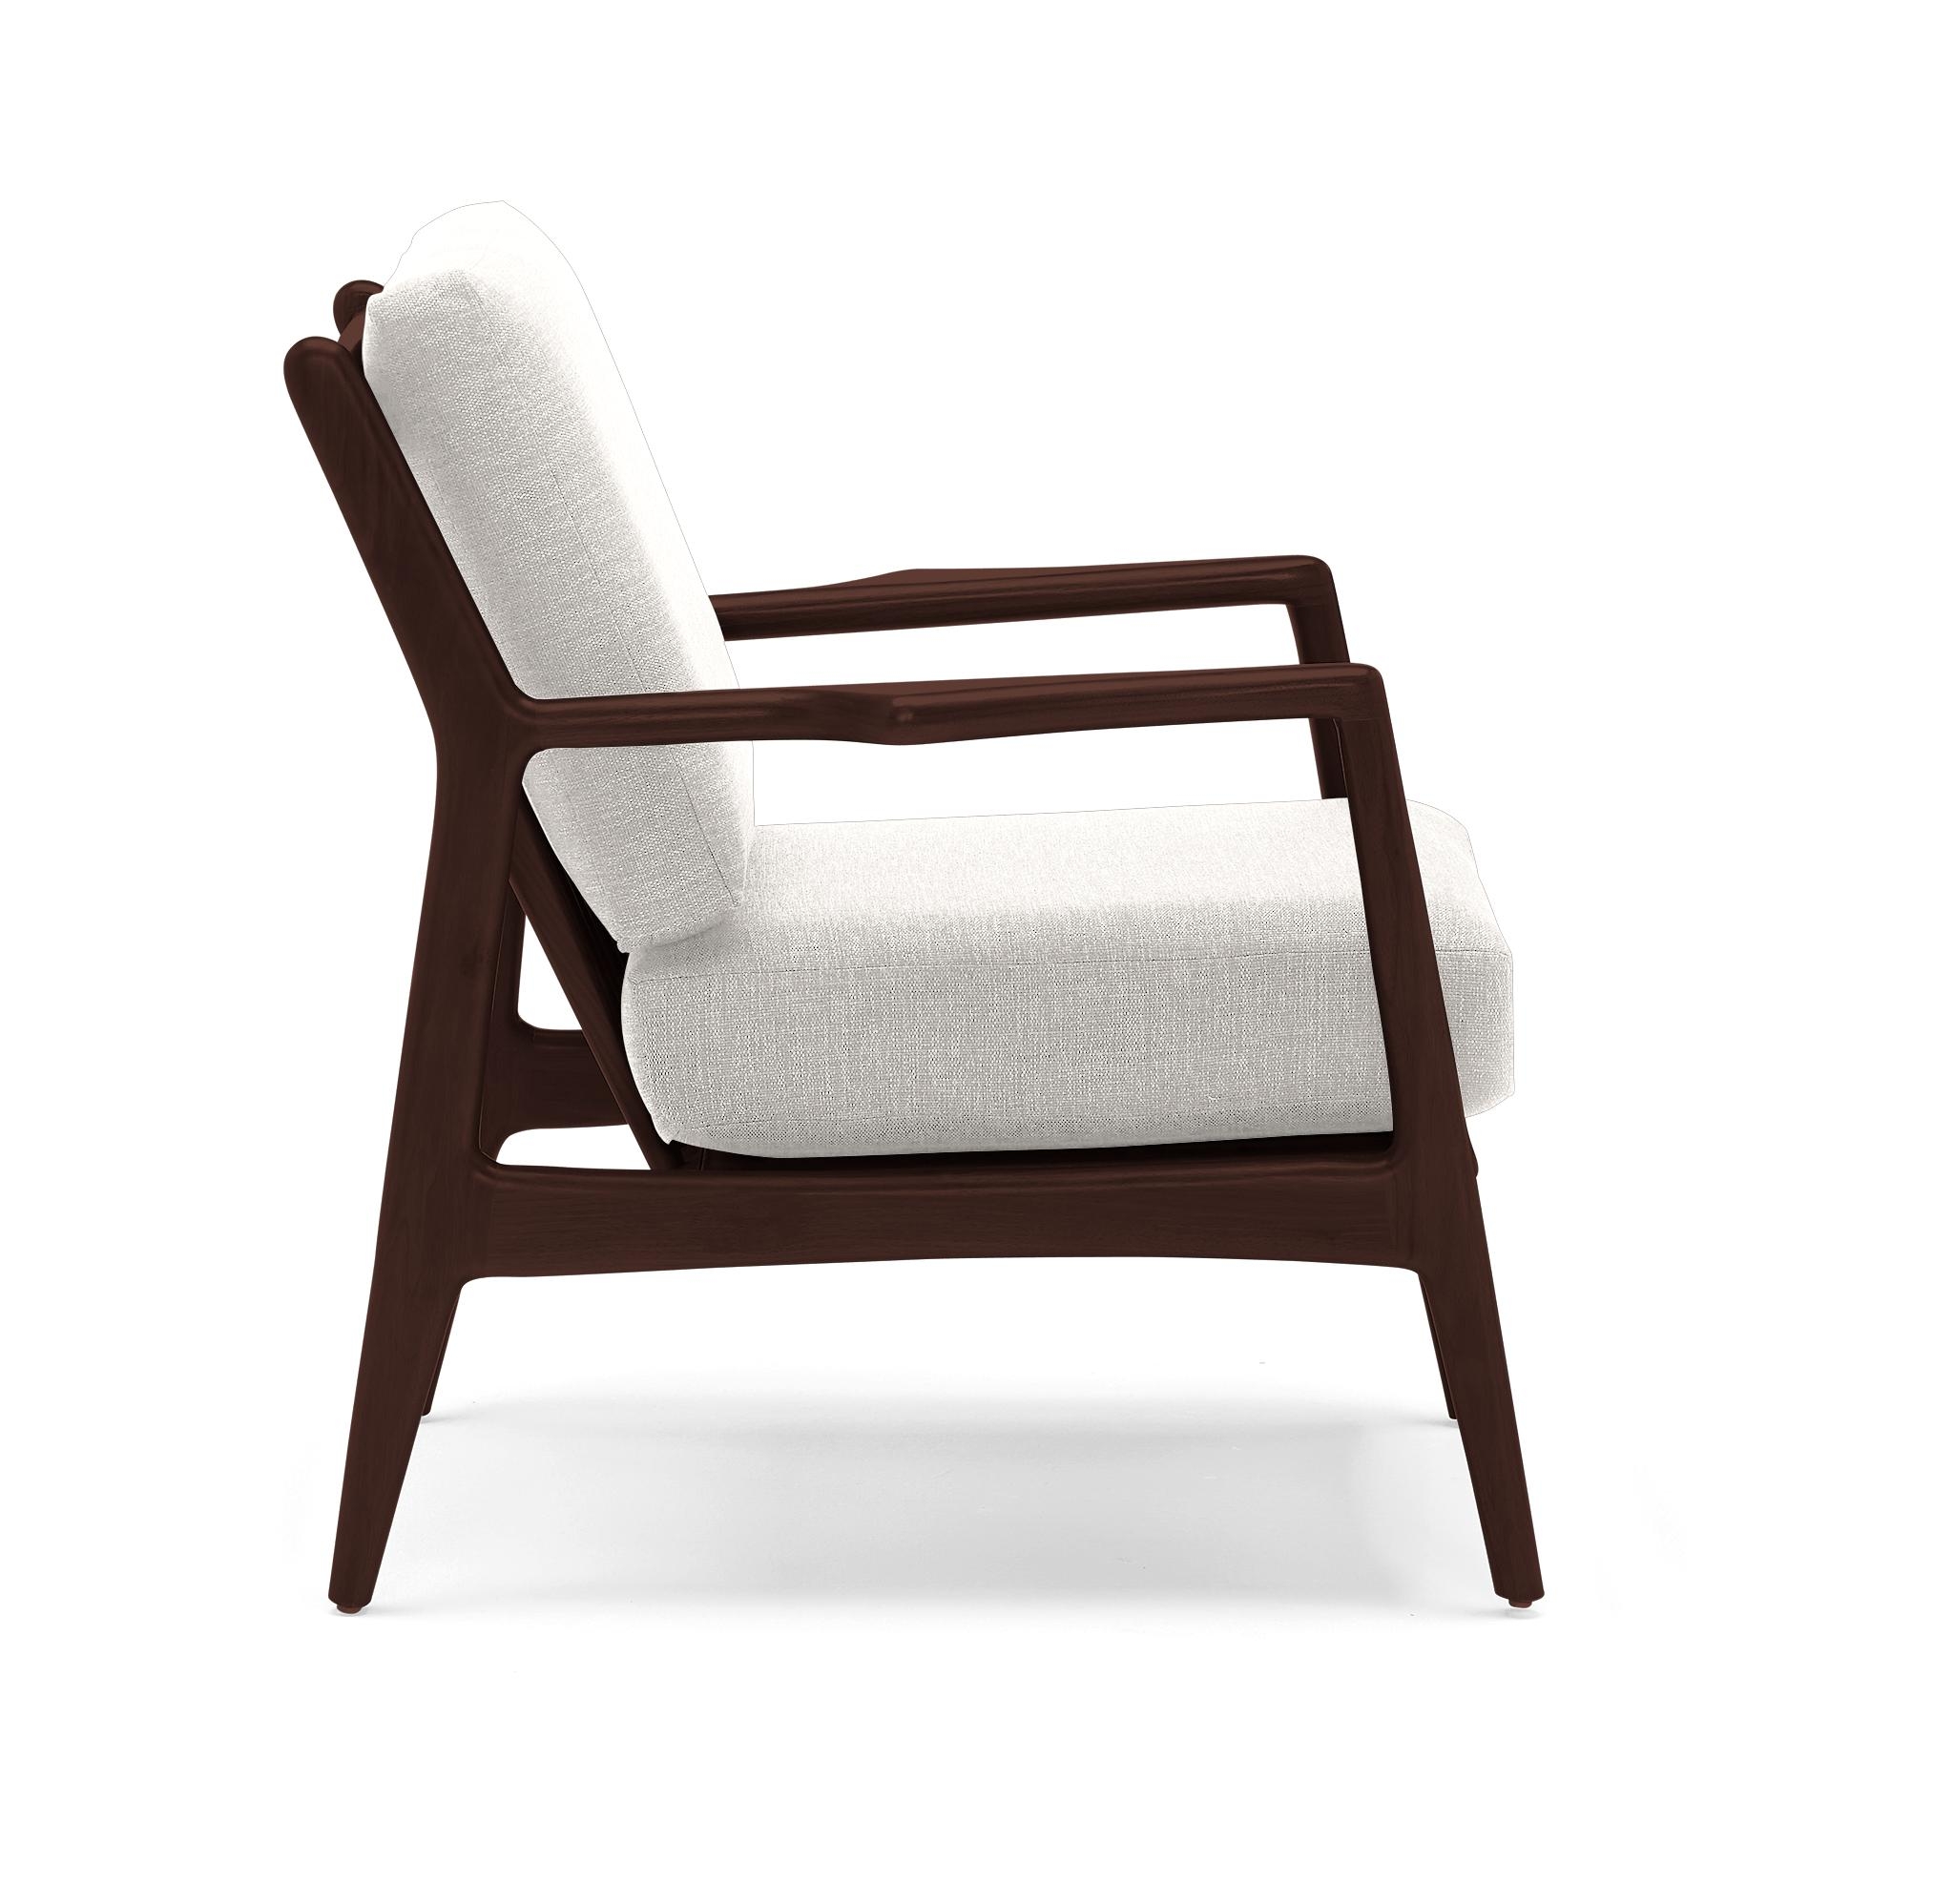 Beige/White Collins Mid Century Modern Chair - Merit Dove - Walnut - Image 3